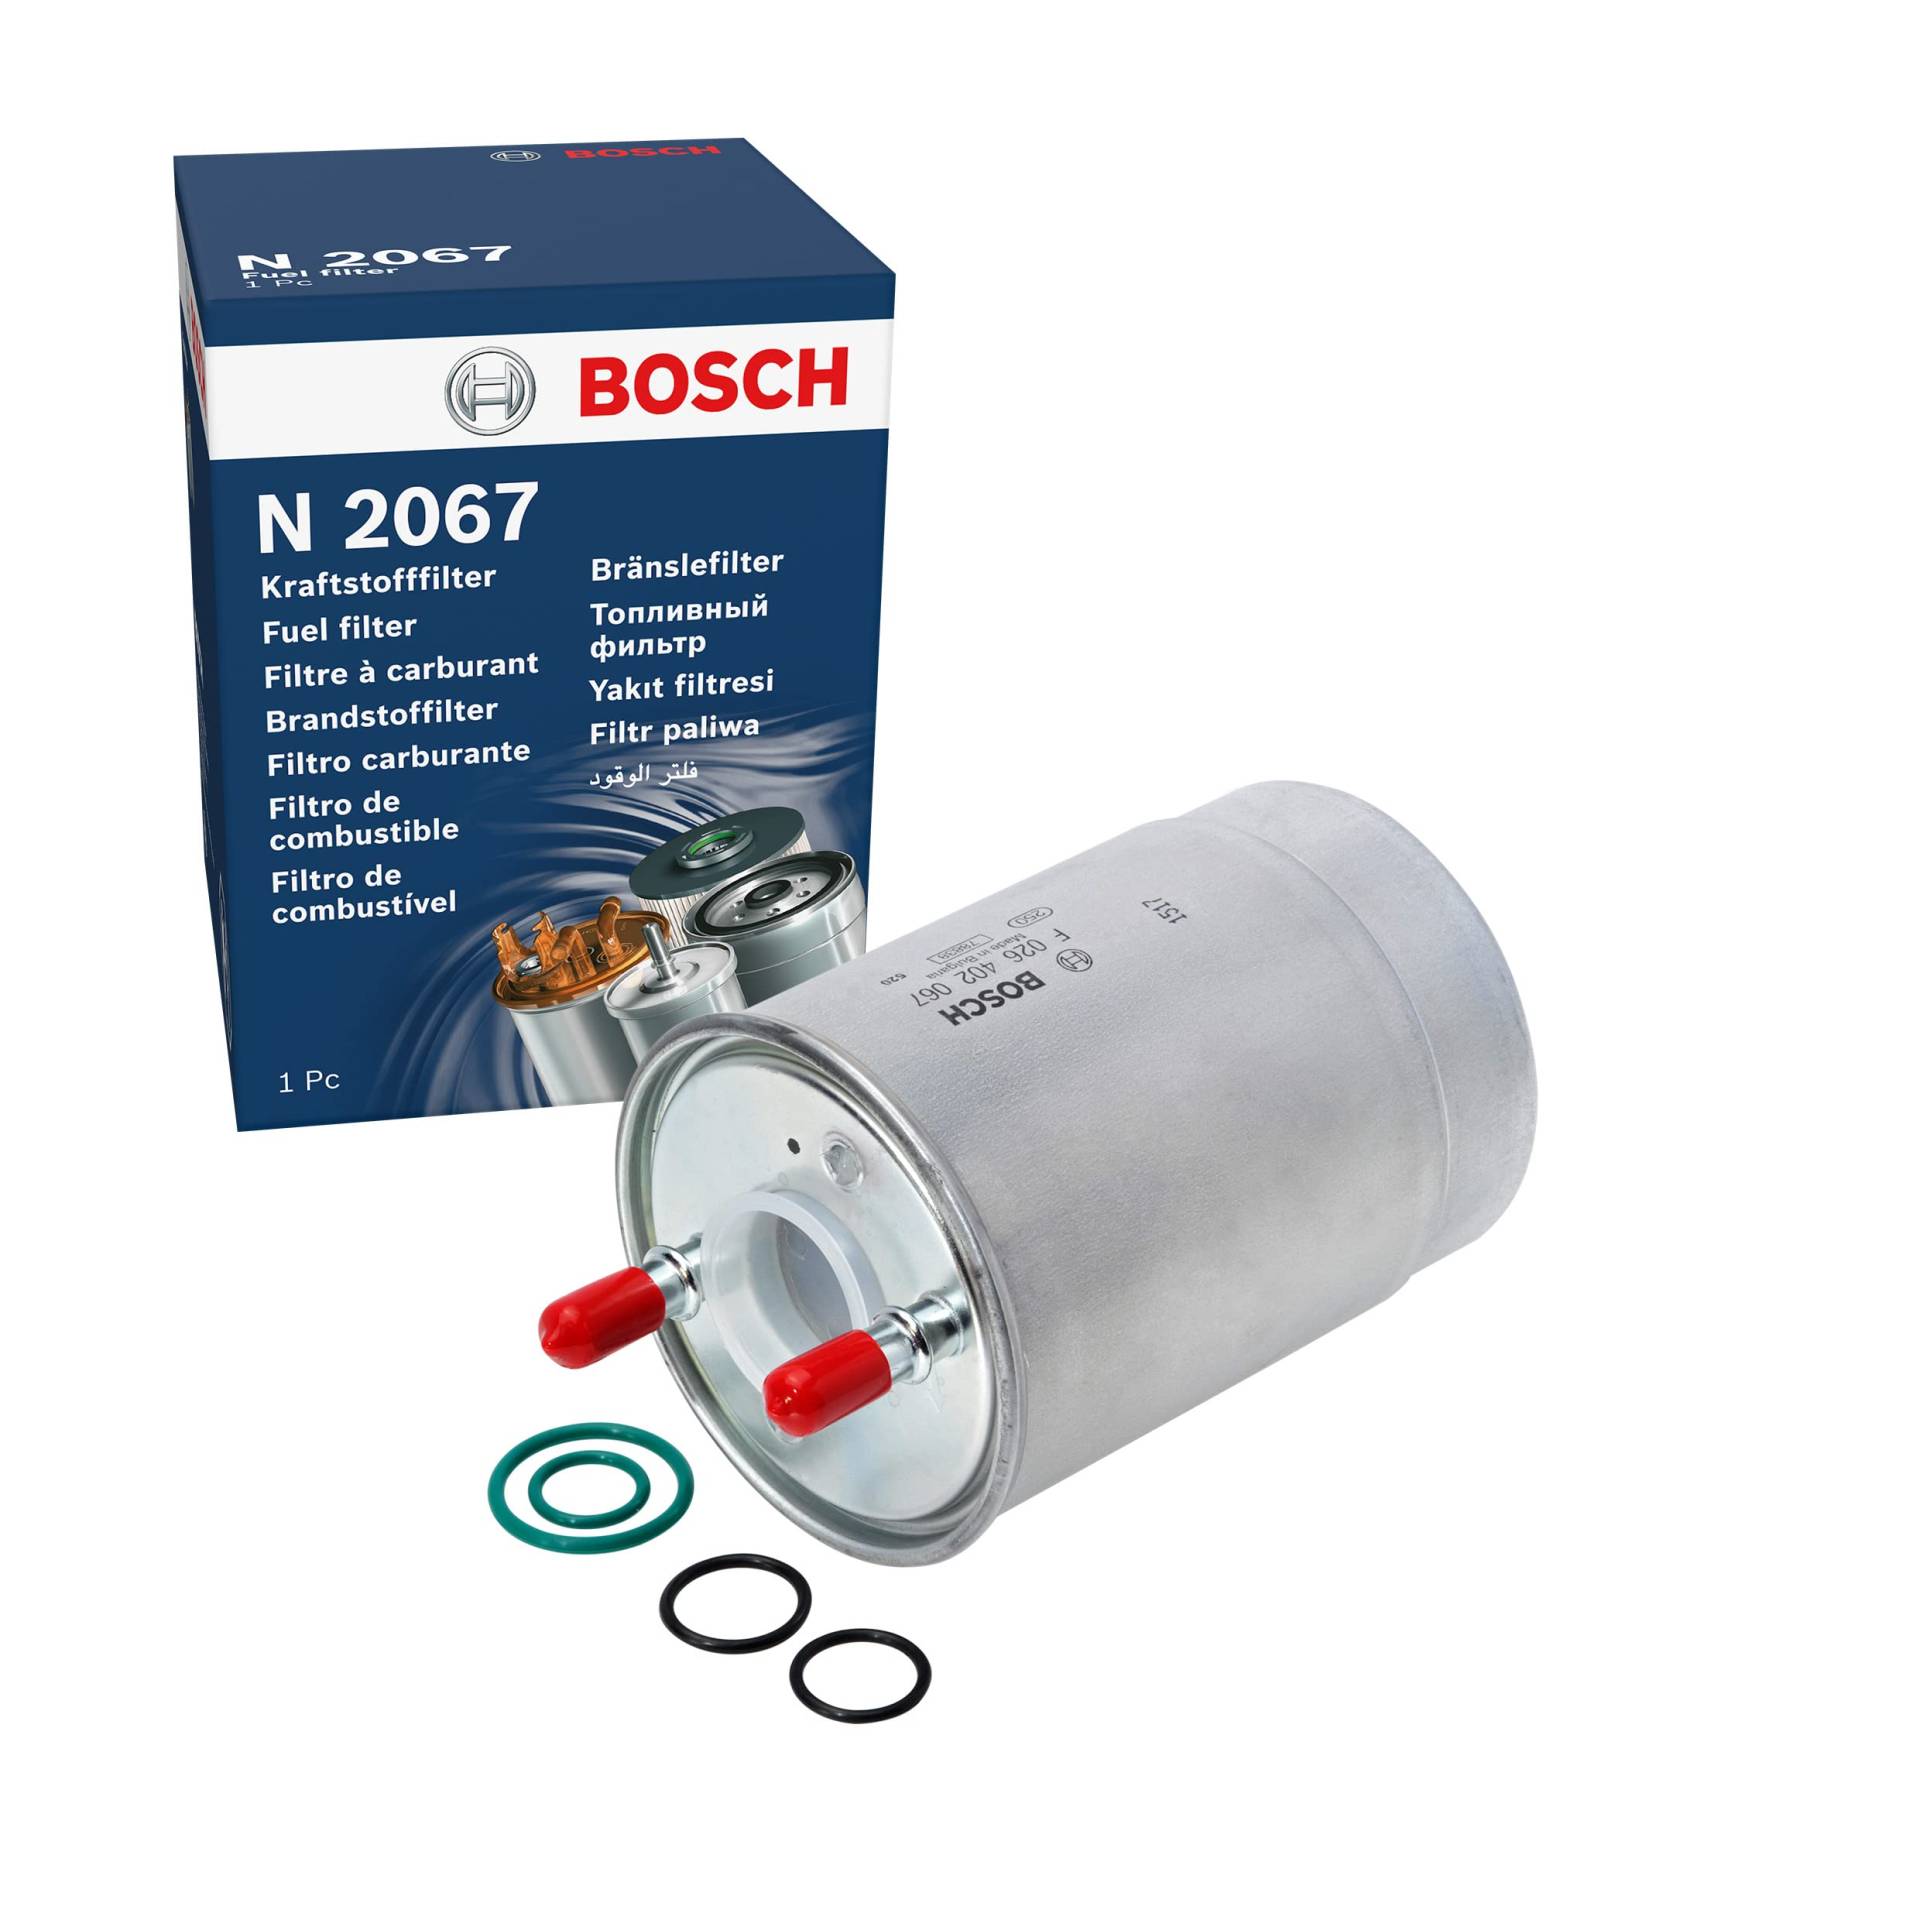 Bosch N2067 - Dieselfilter Auto von Bosch Automotive